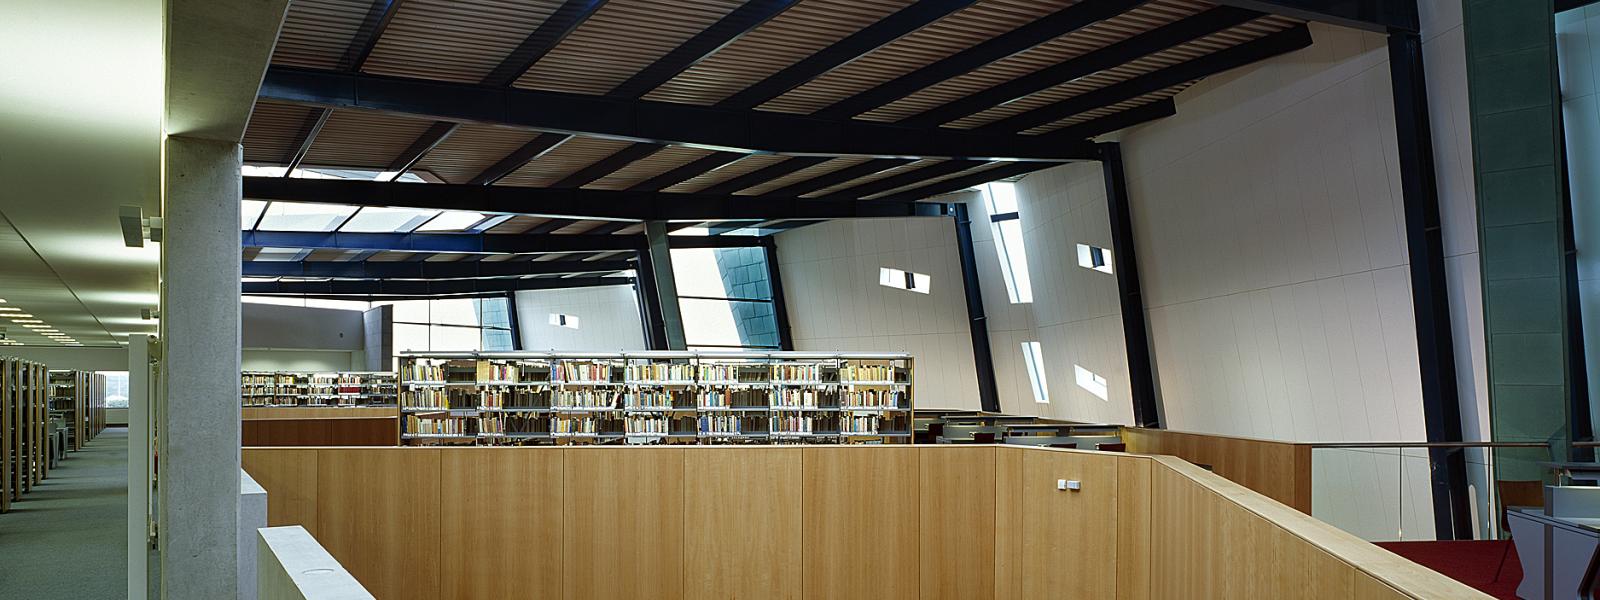 Upper floor of GMIT Galway library